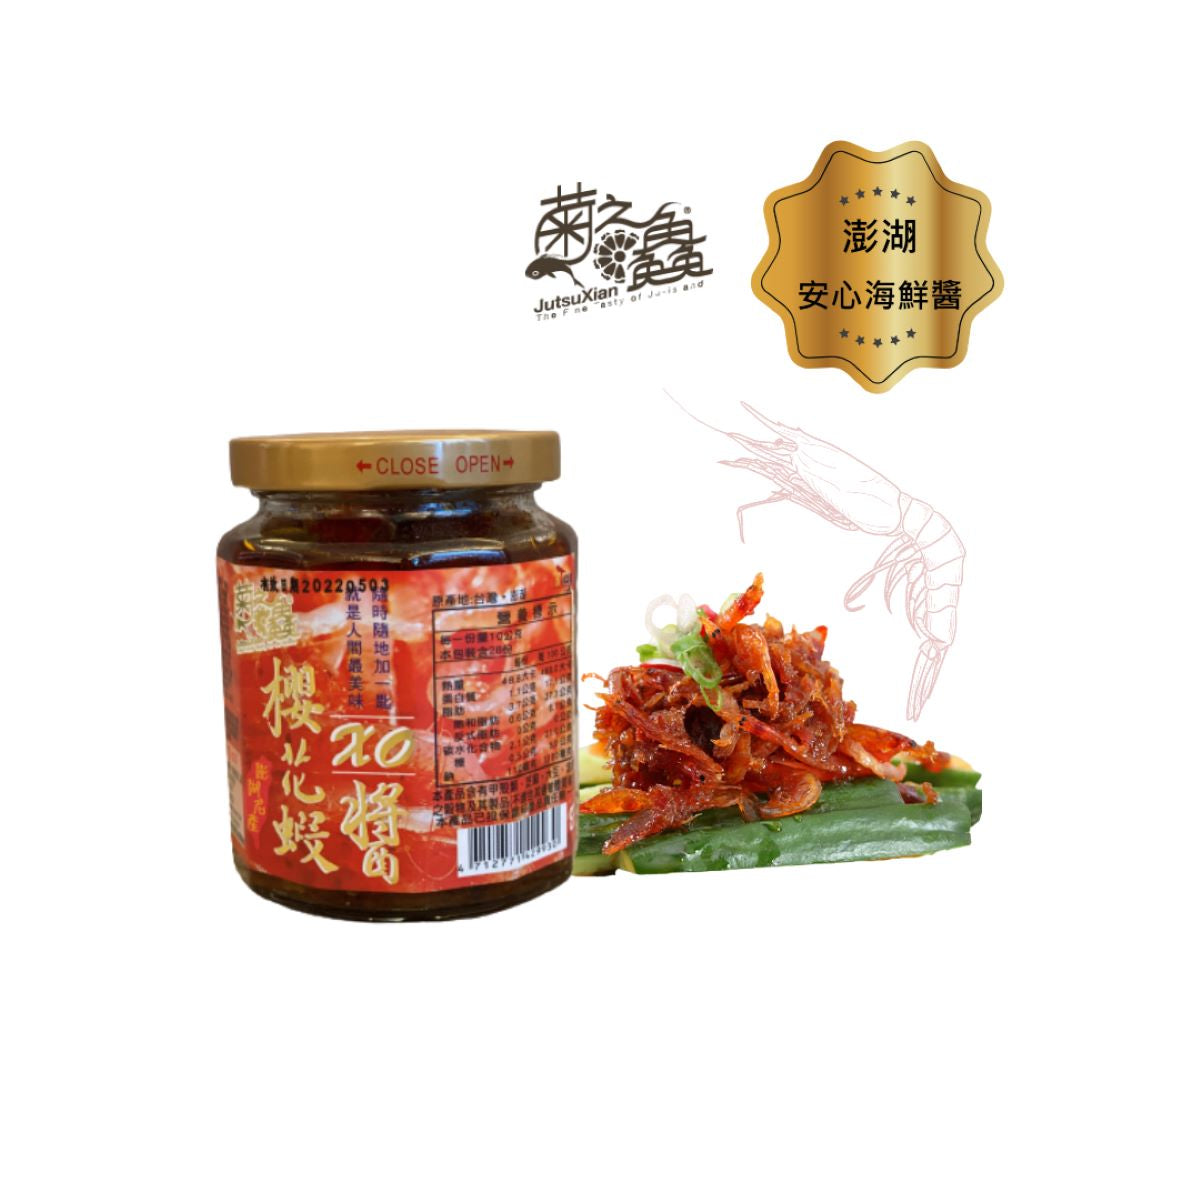 澎湖菊之鱻海鮮干貝醬及櫻花蝦XO醬